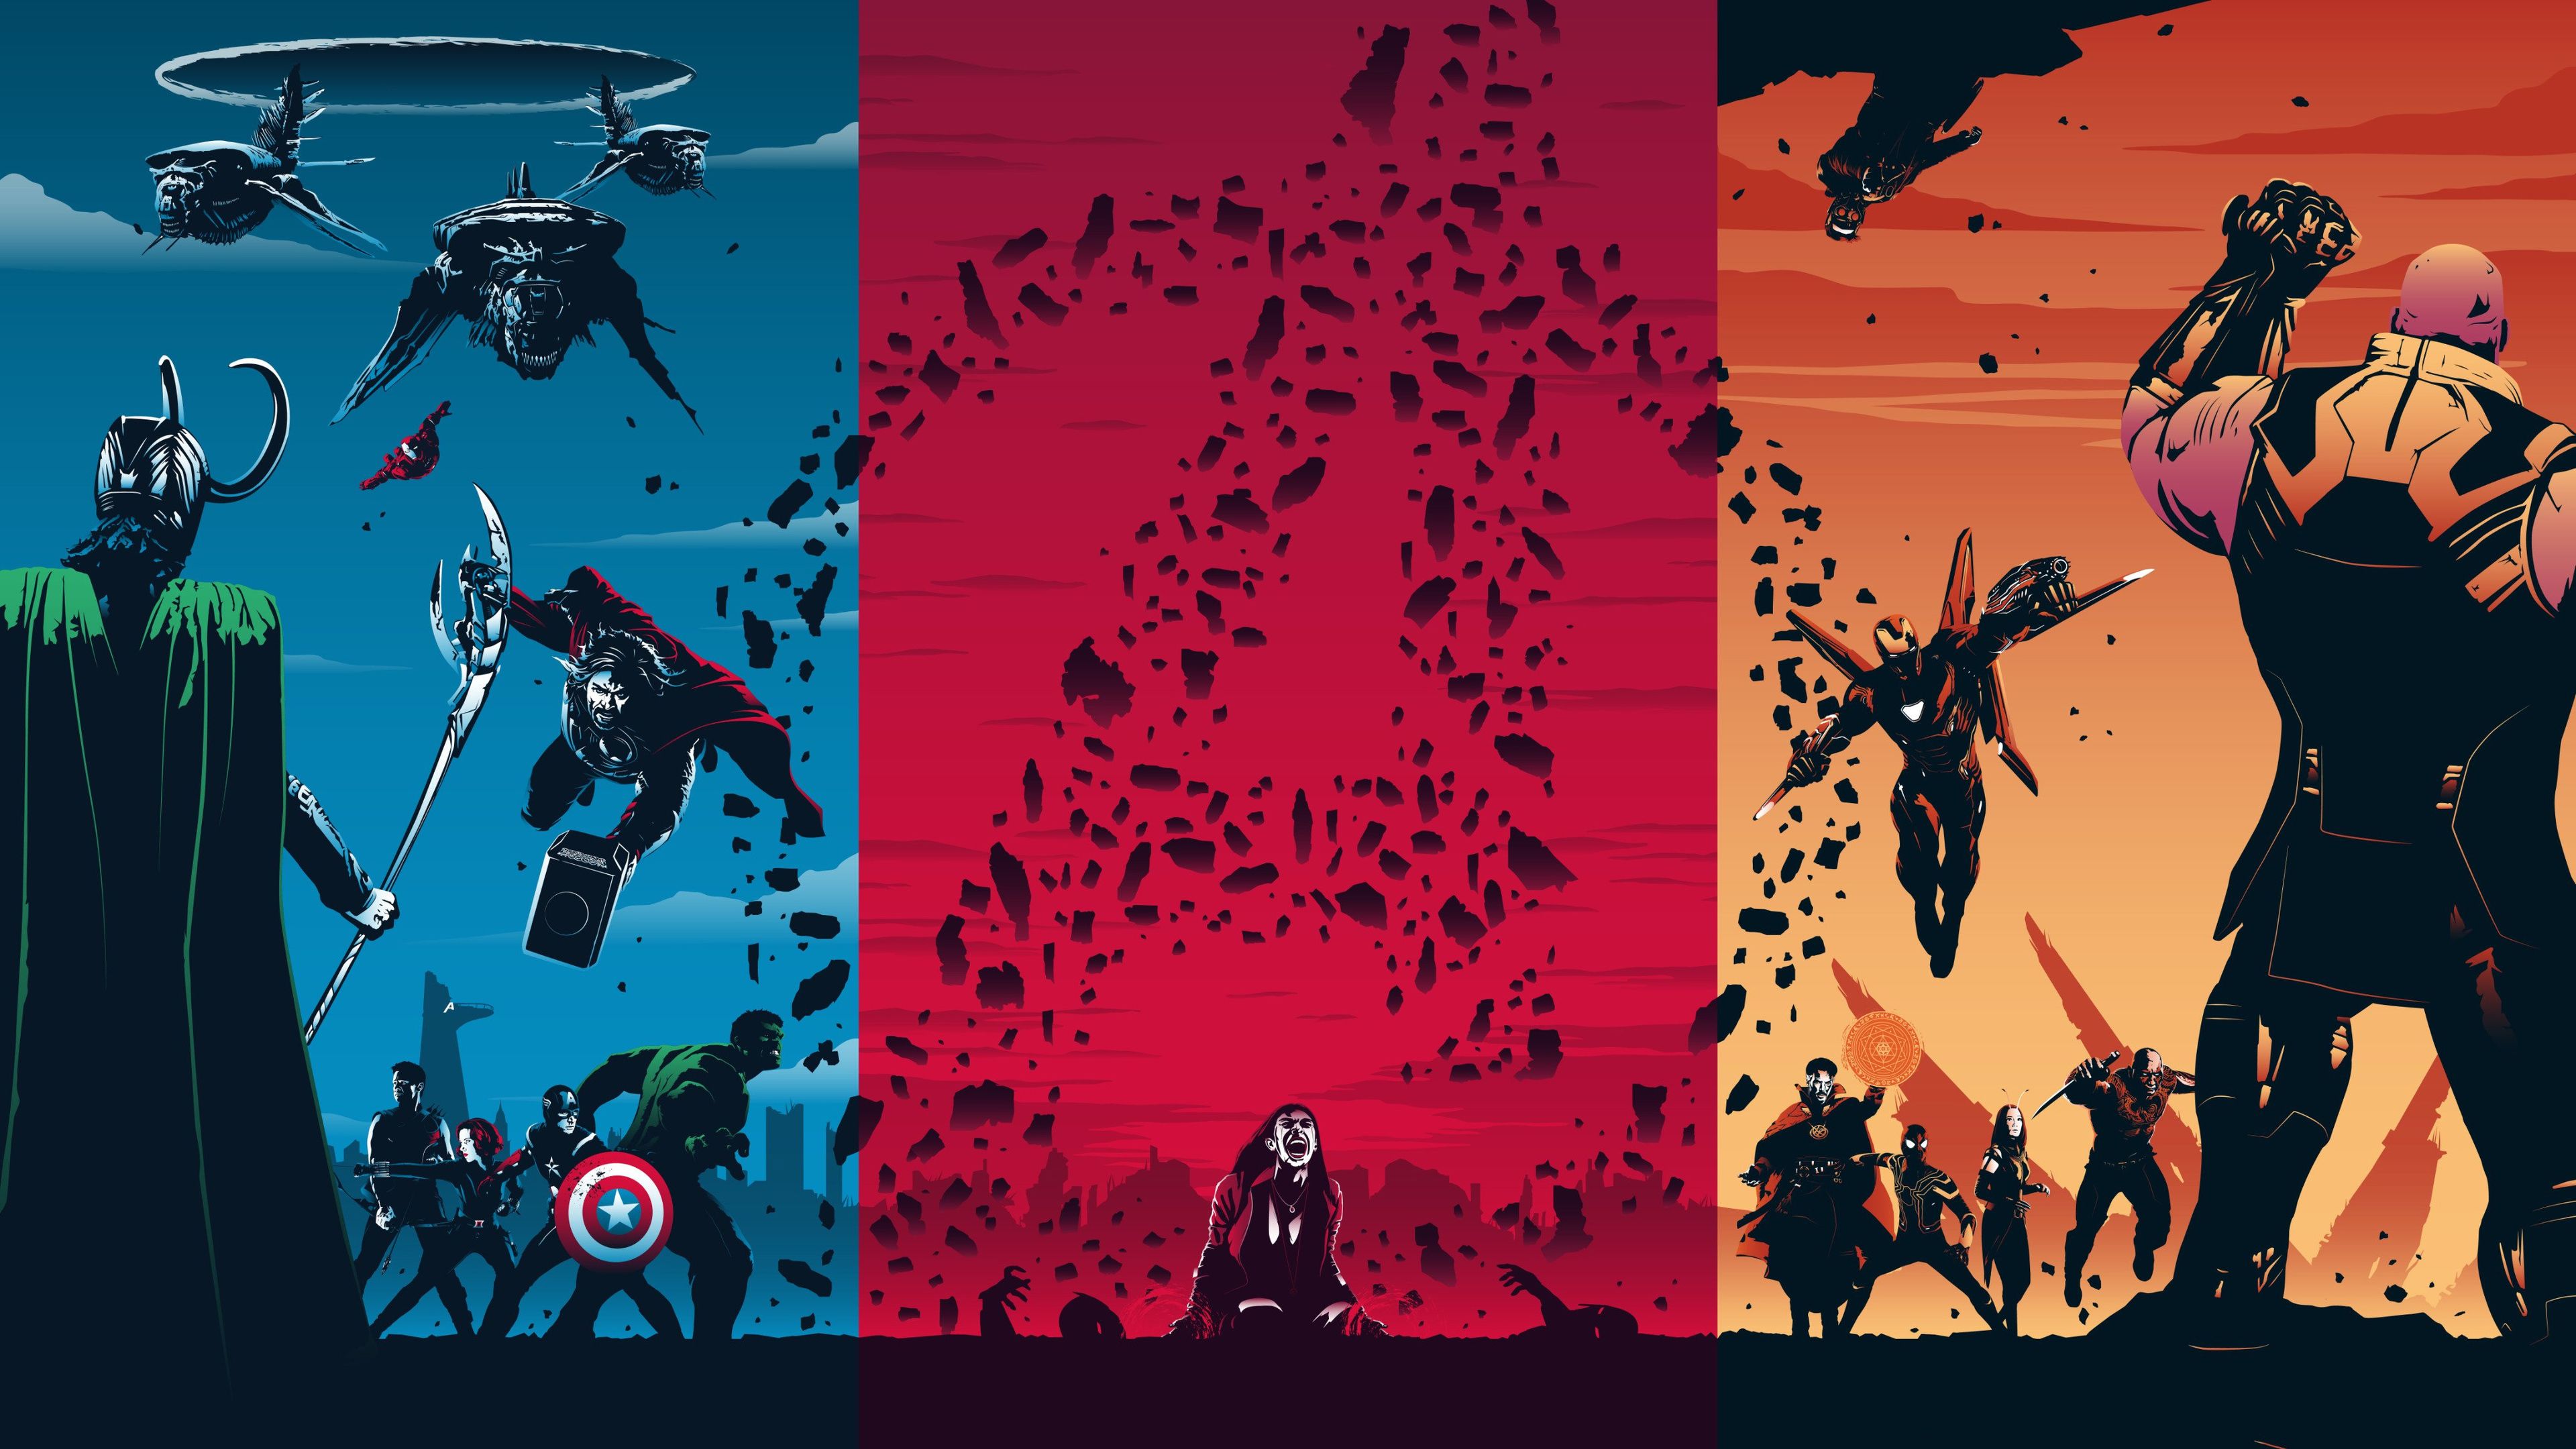 Wallpaper 4k Avengers Trilogy 4k 4k Wallpaper, Artwork Wallpaper, Avengers Wallpaper, Digital Art Wallpaper, Hd Wallpaper, Superheroes Wallpaper